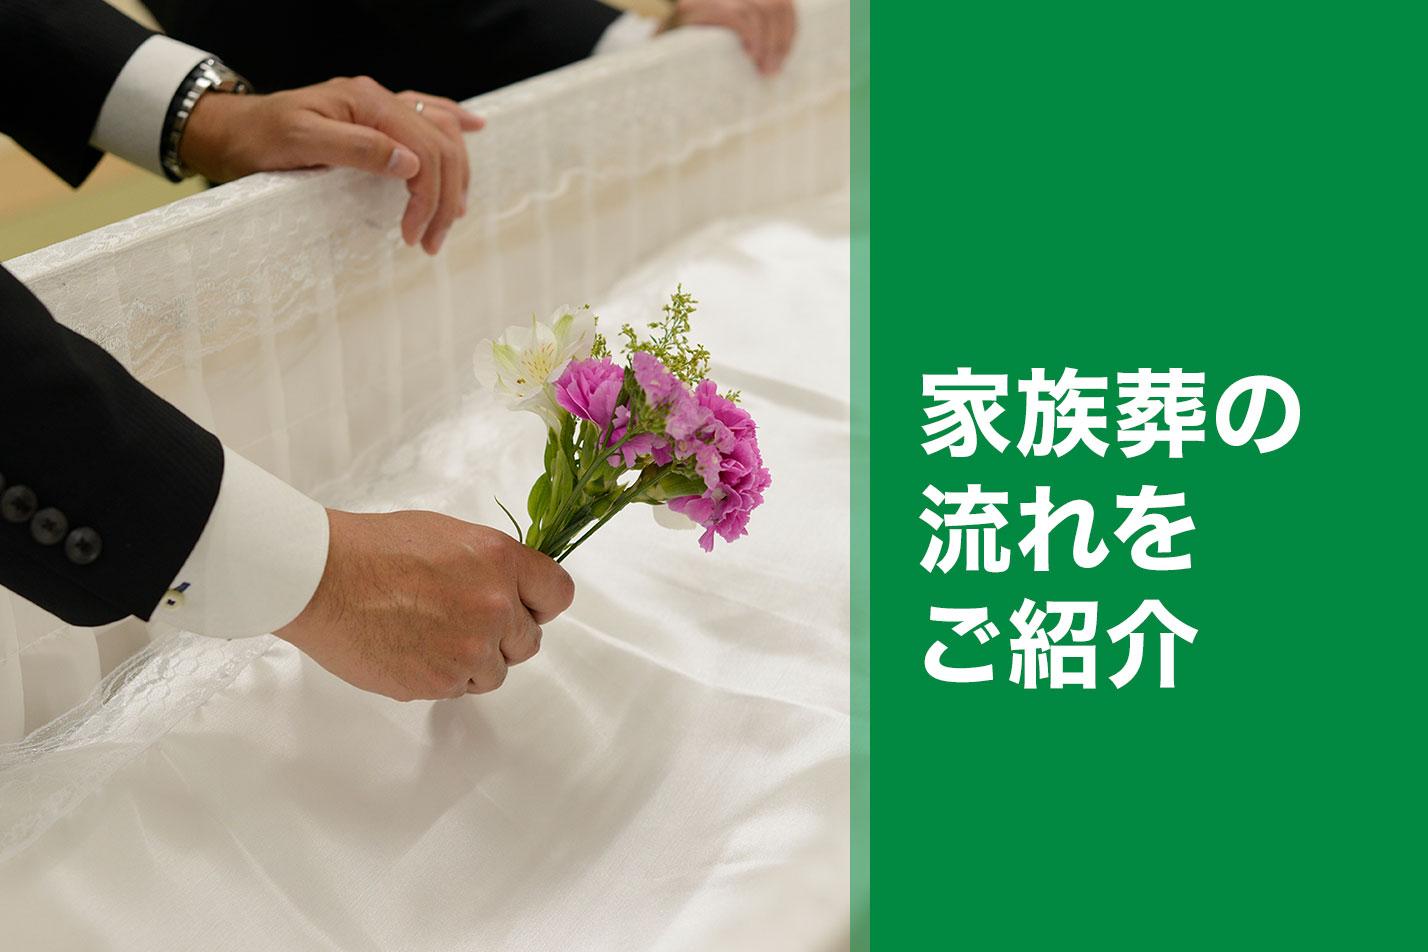 磐田市における家族葬の流れとは？のイメージ画像